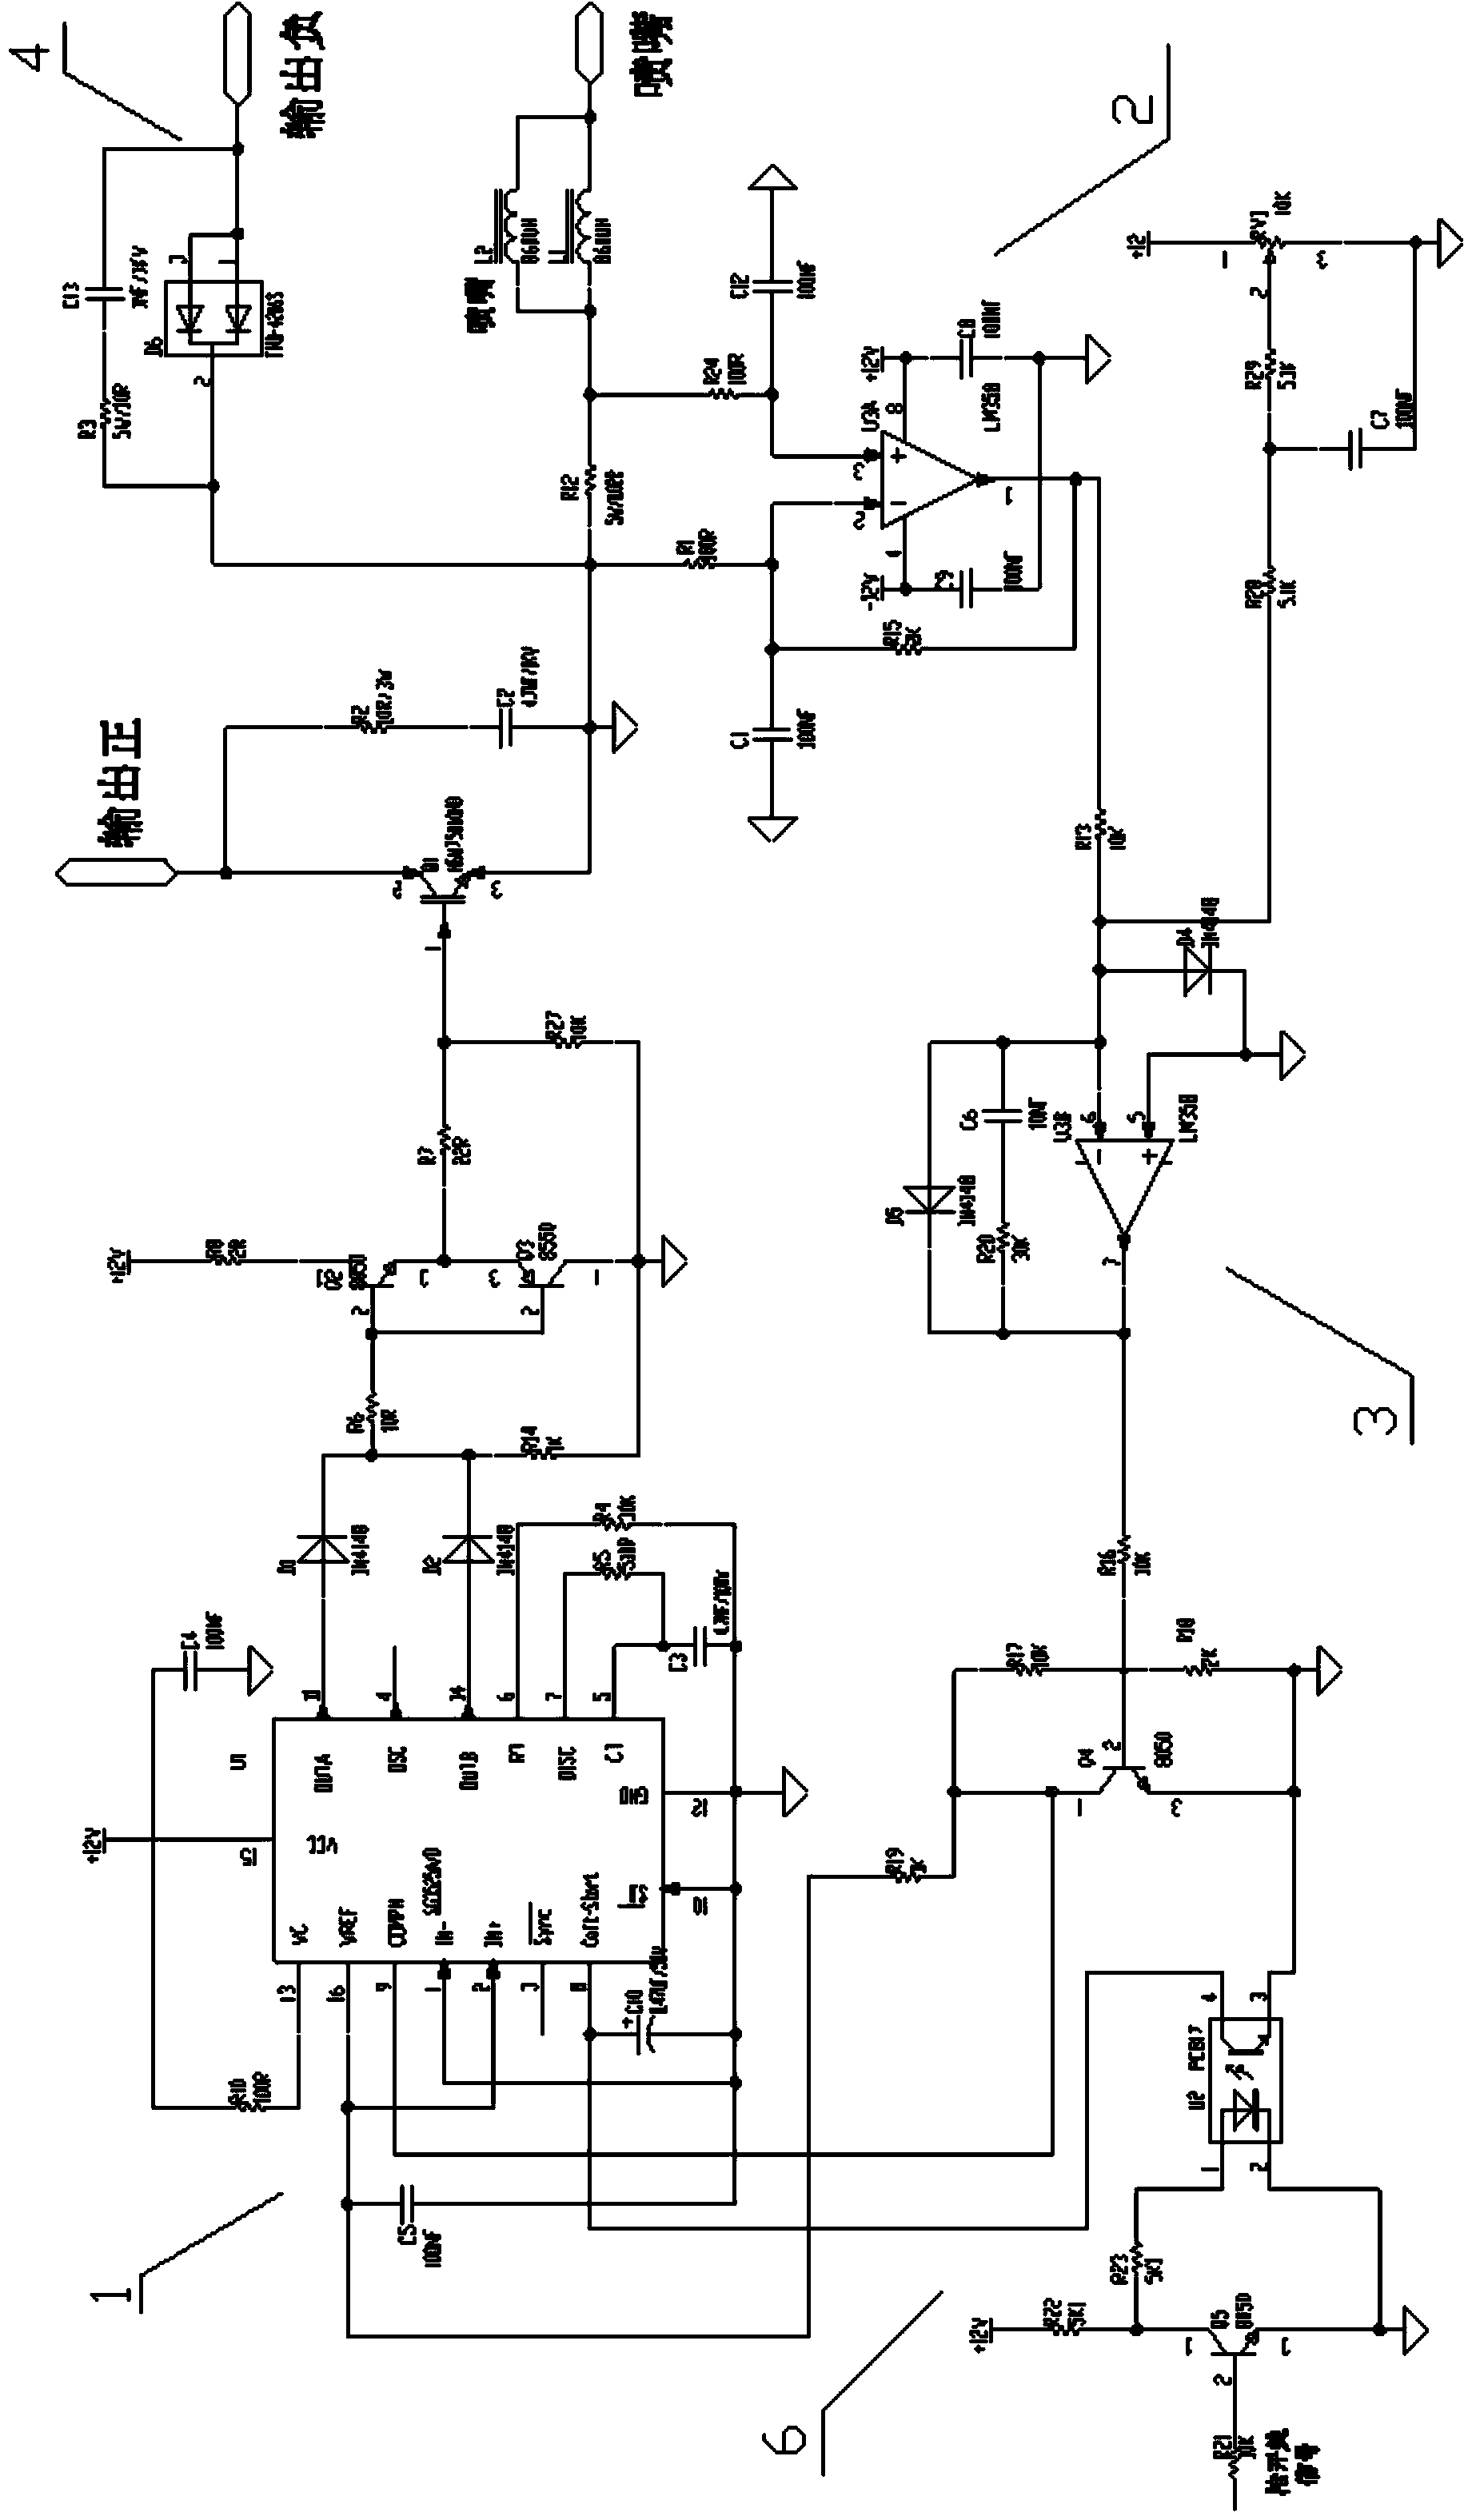 A dimensional arc chopper control circuit and cutting machine